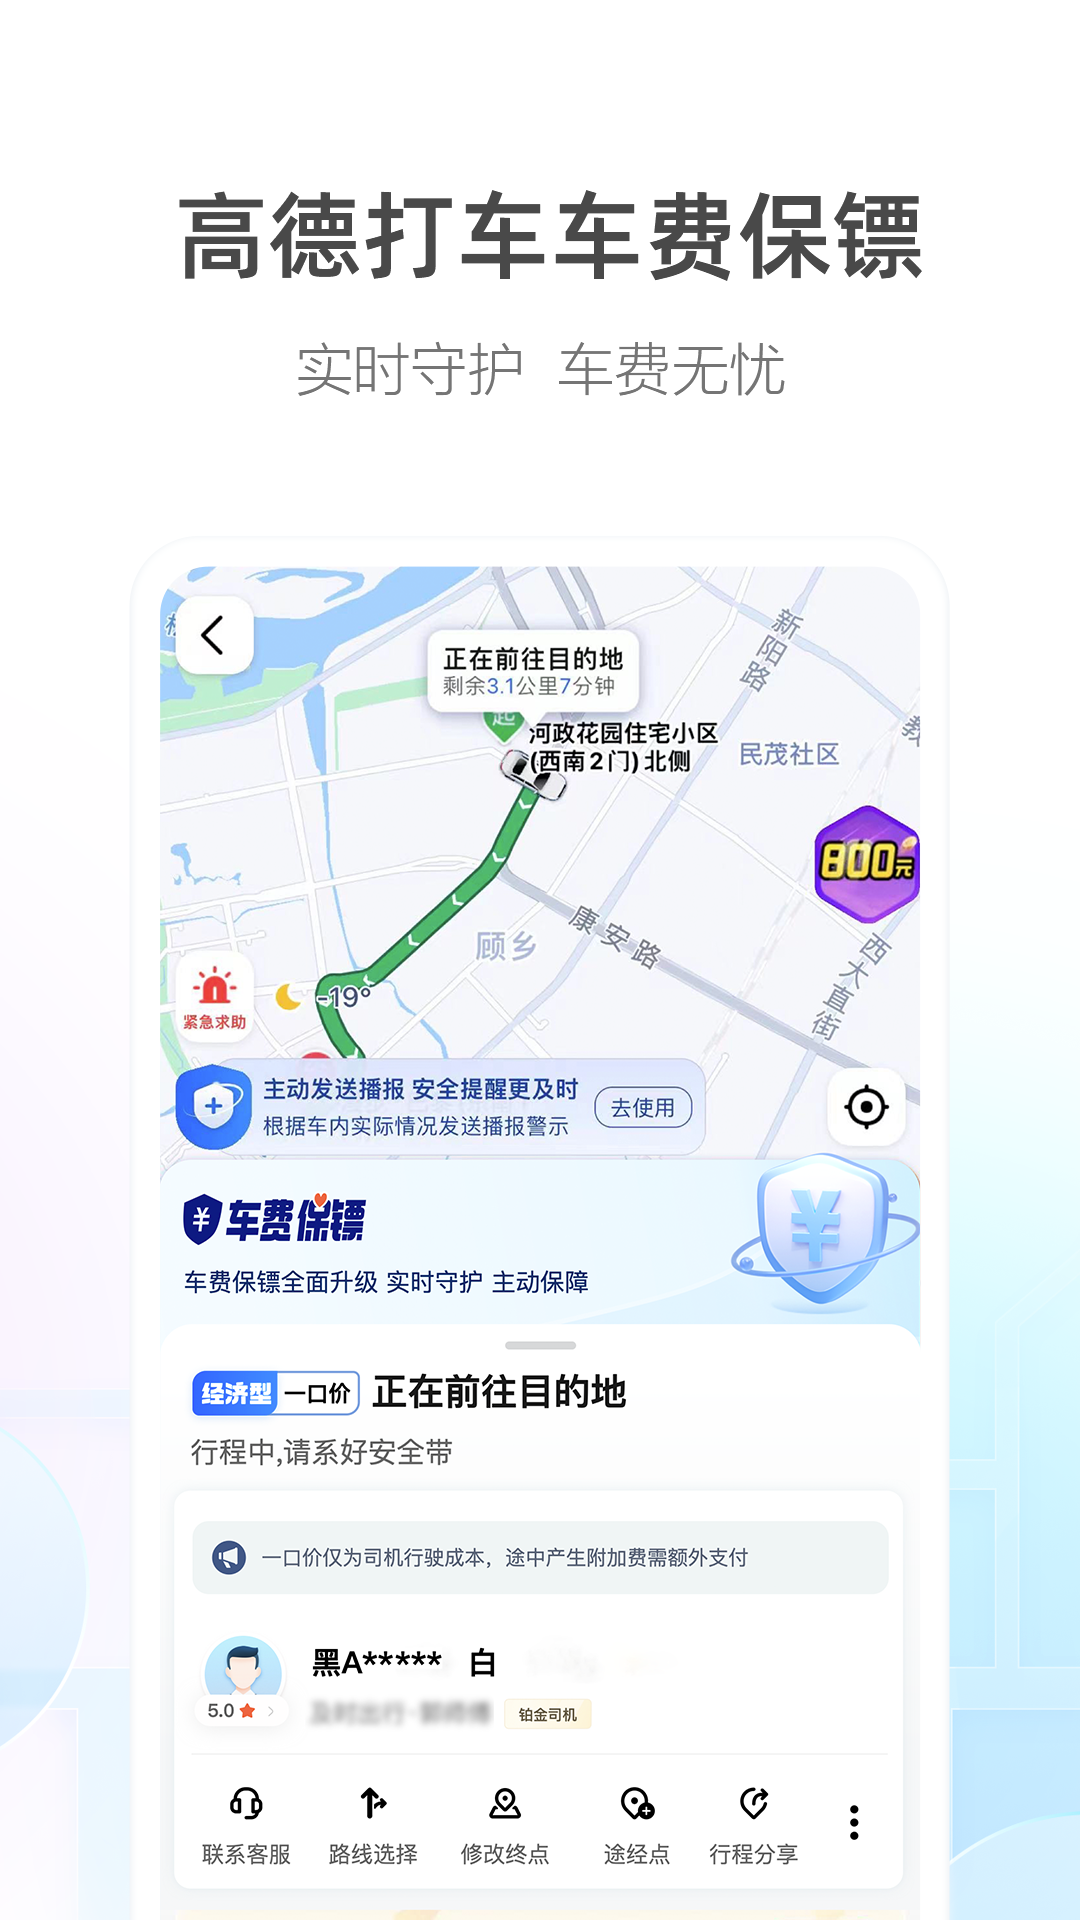 高德地图打车司机端app